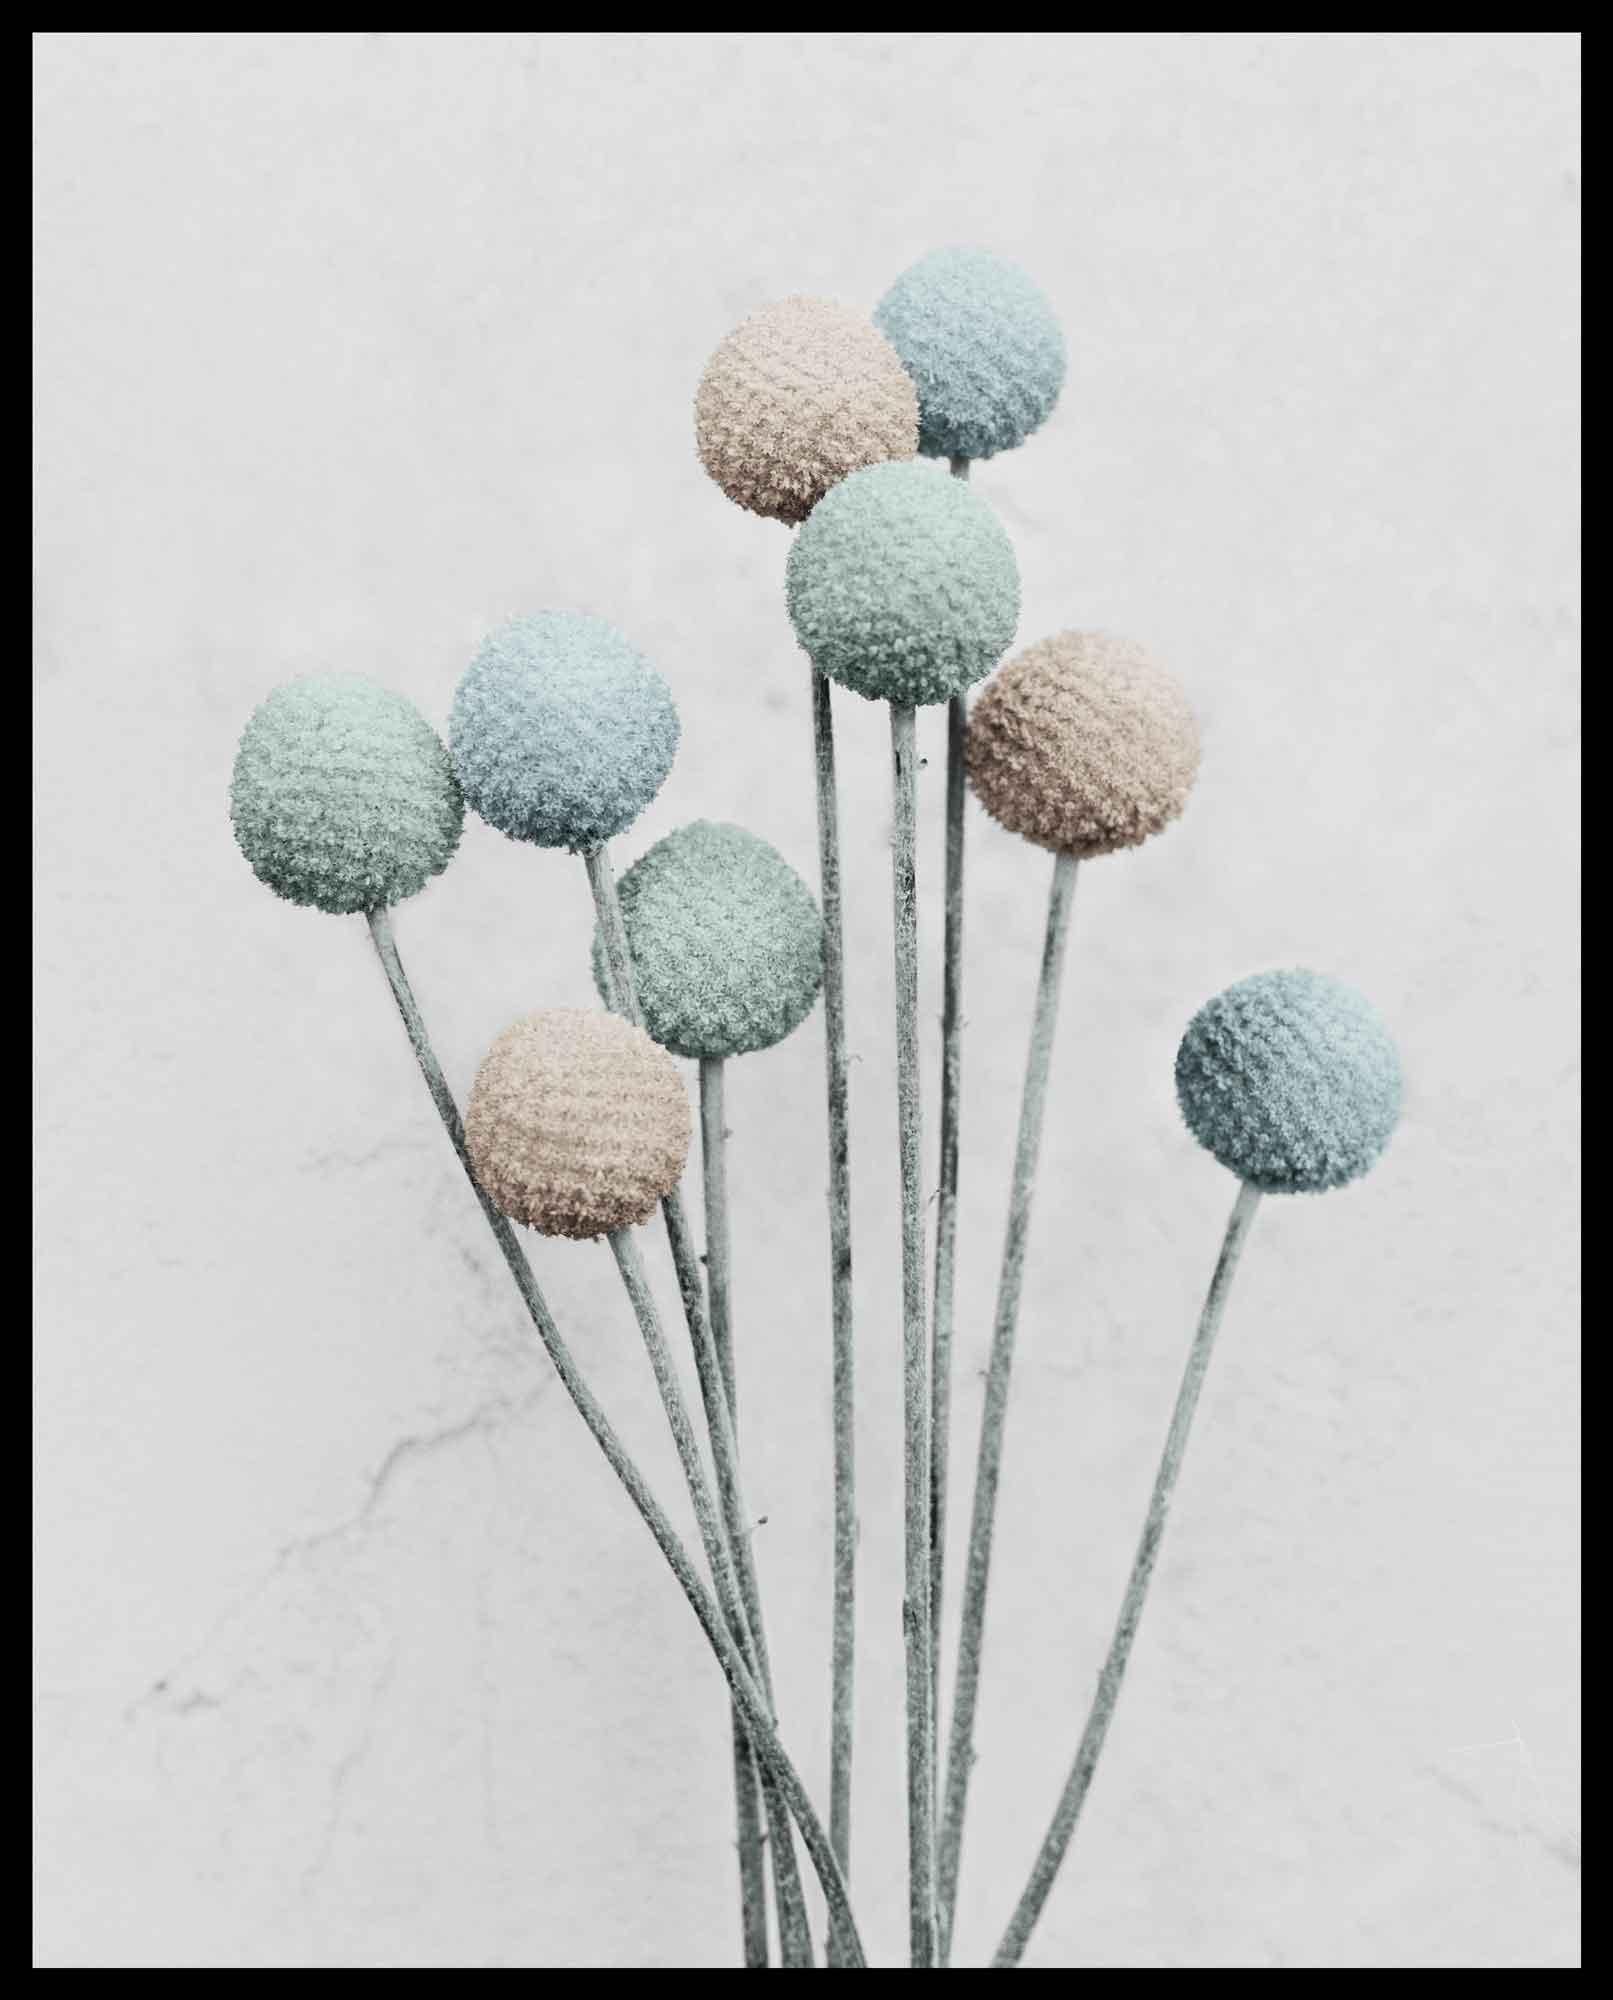 Botanica #20 (Craspedia) (Grau), Color Photograph, von Vee Speers